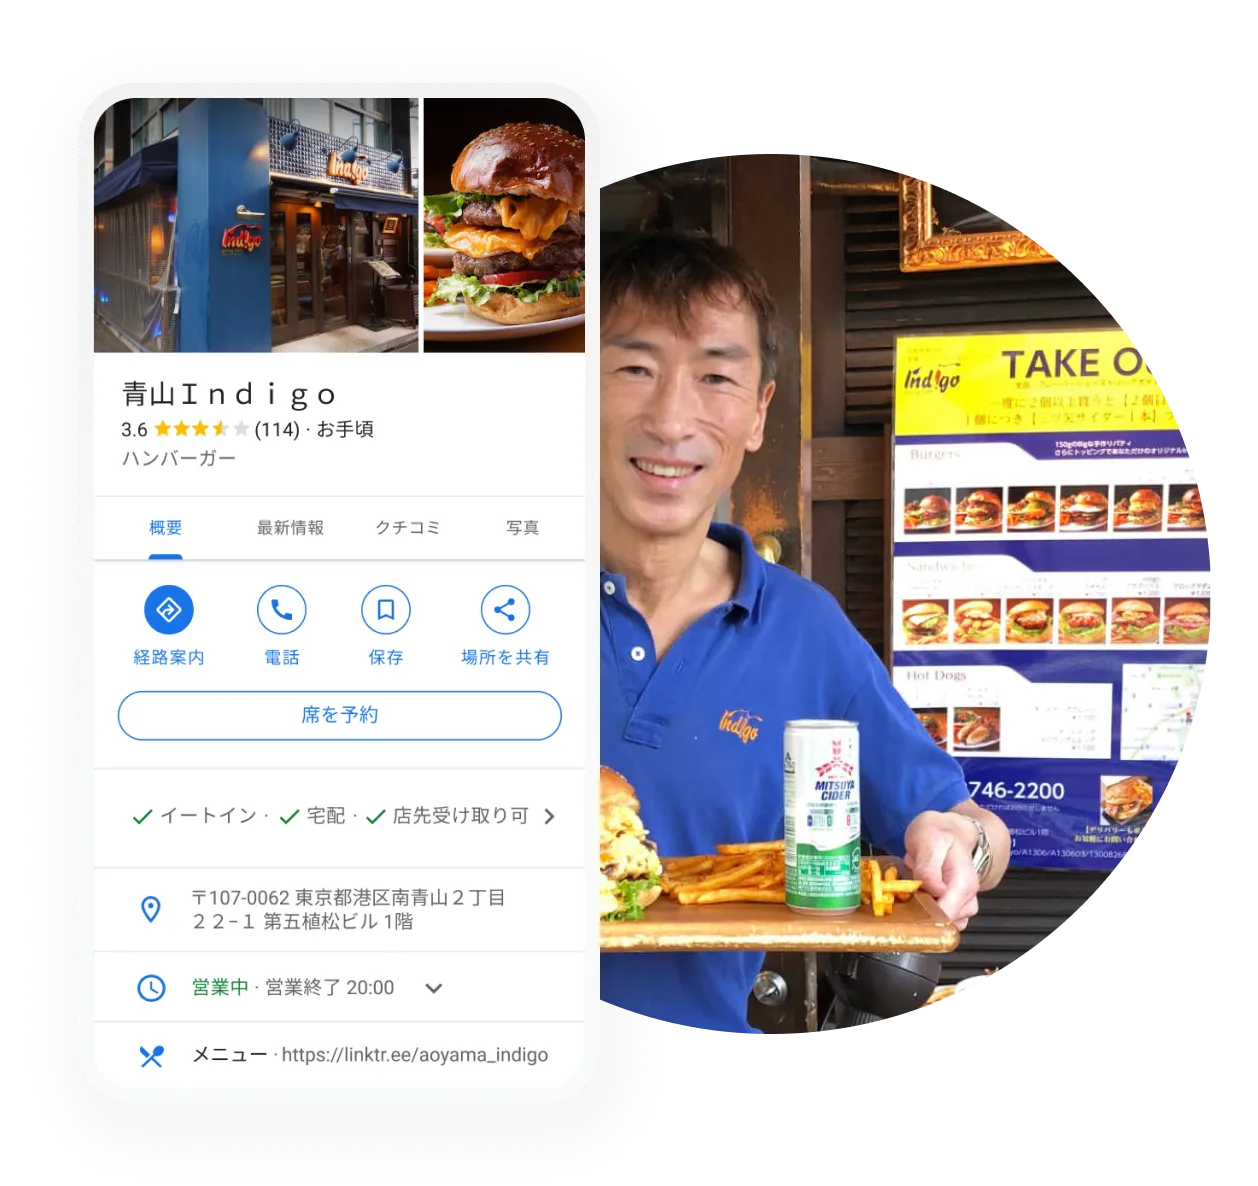 レストランのヒーロー画像 - モバイル デバイスに表示されている、レストランのビジネス プロフィールの画像